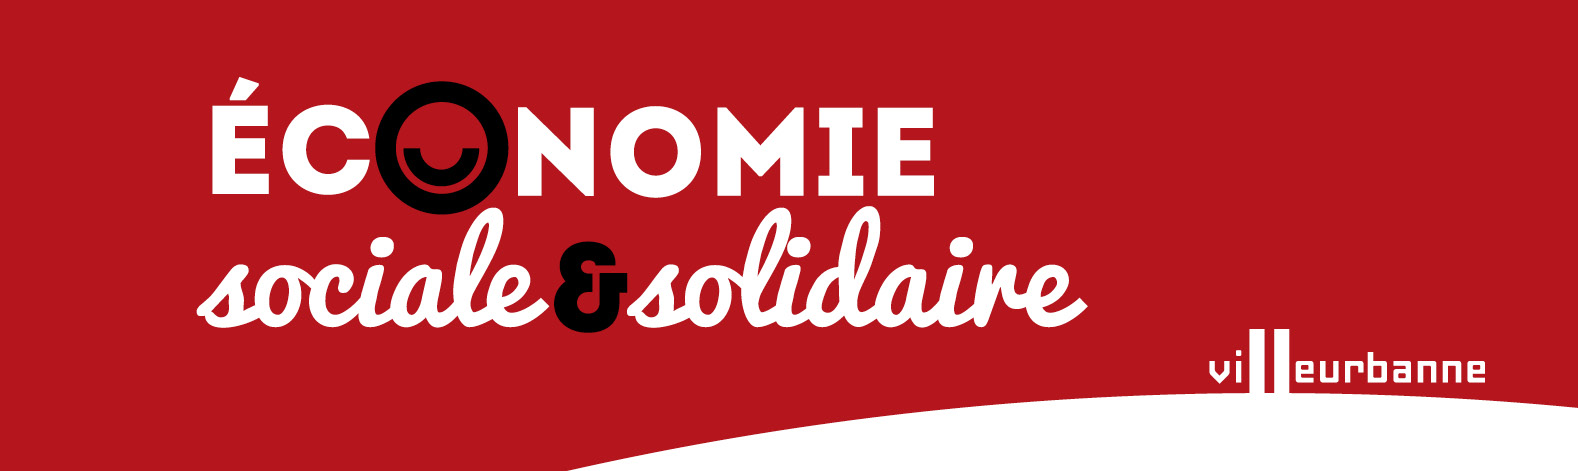 économie sociale et solidaire - Villeurbanne